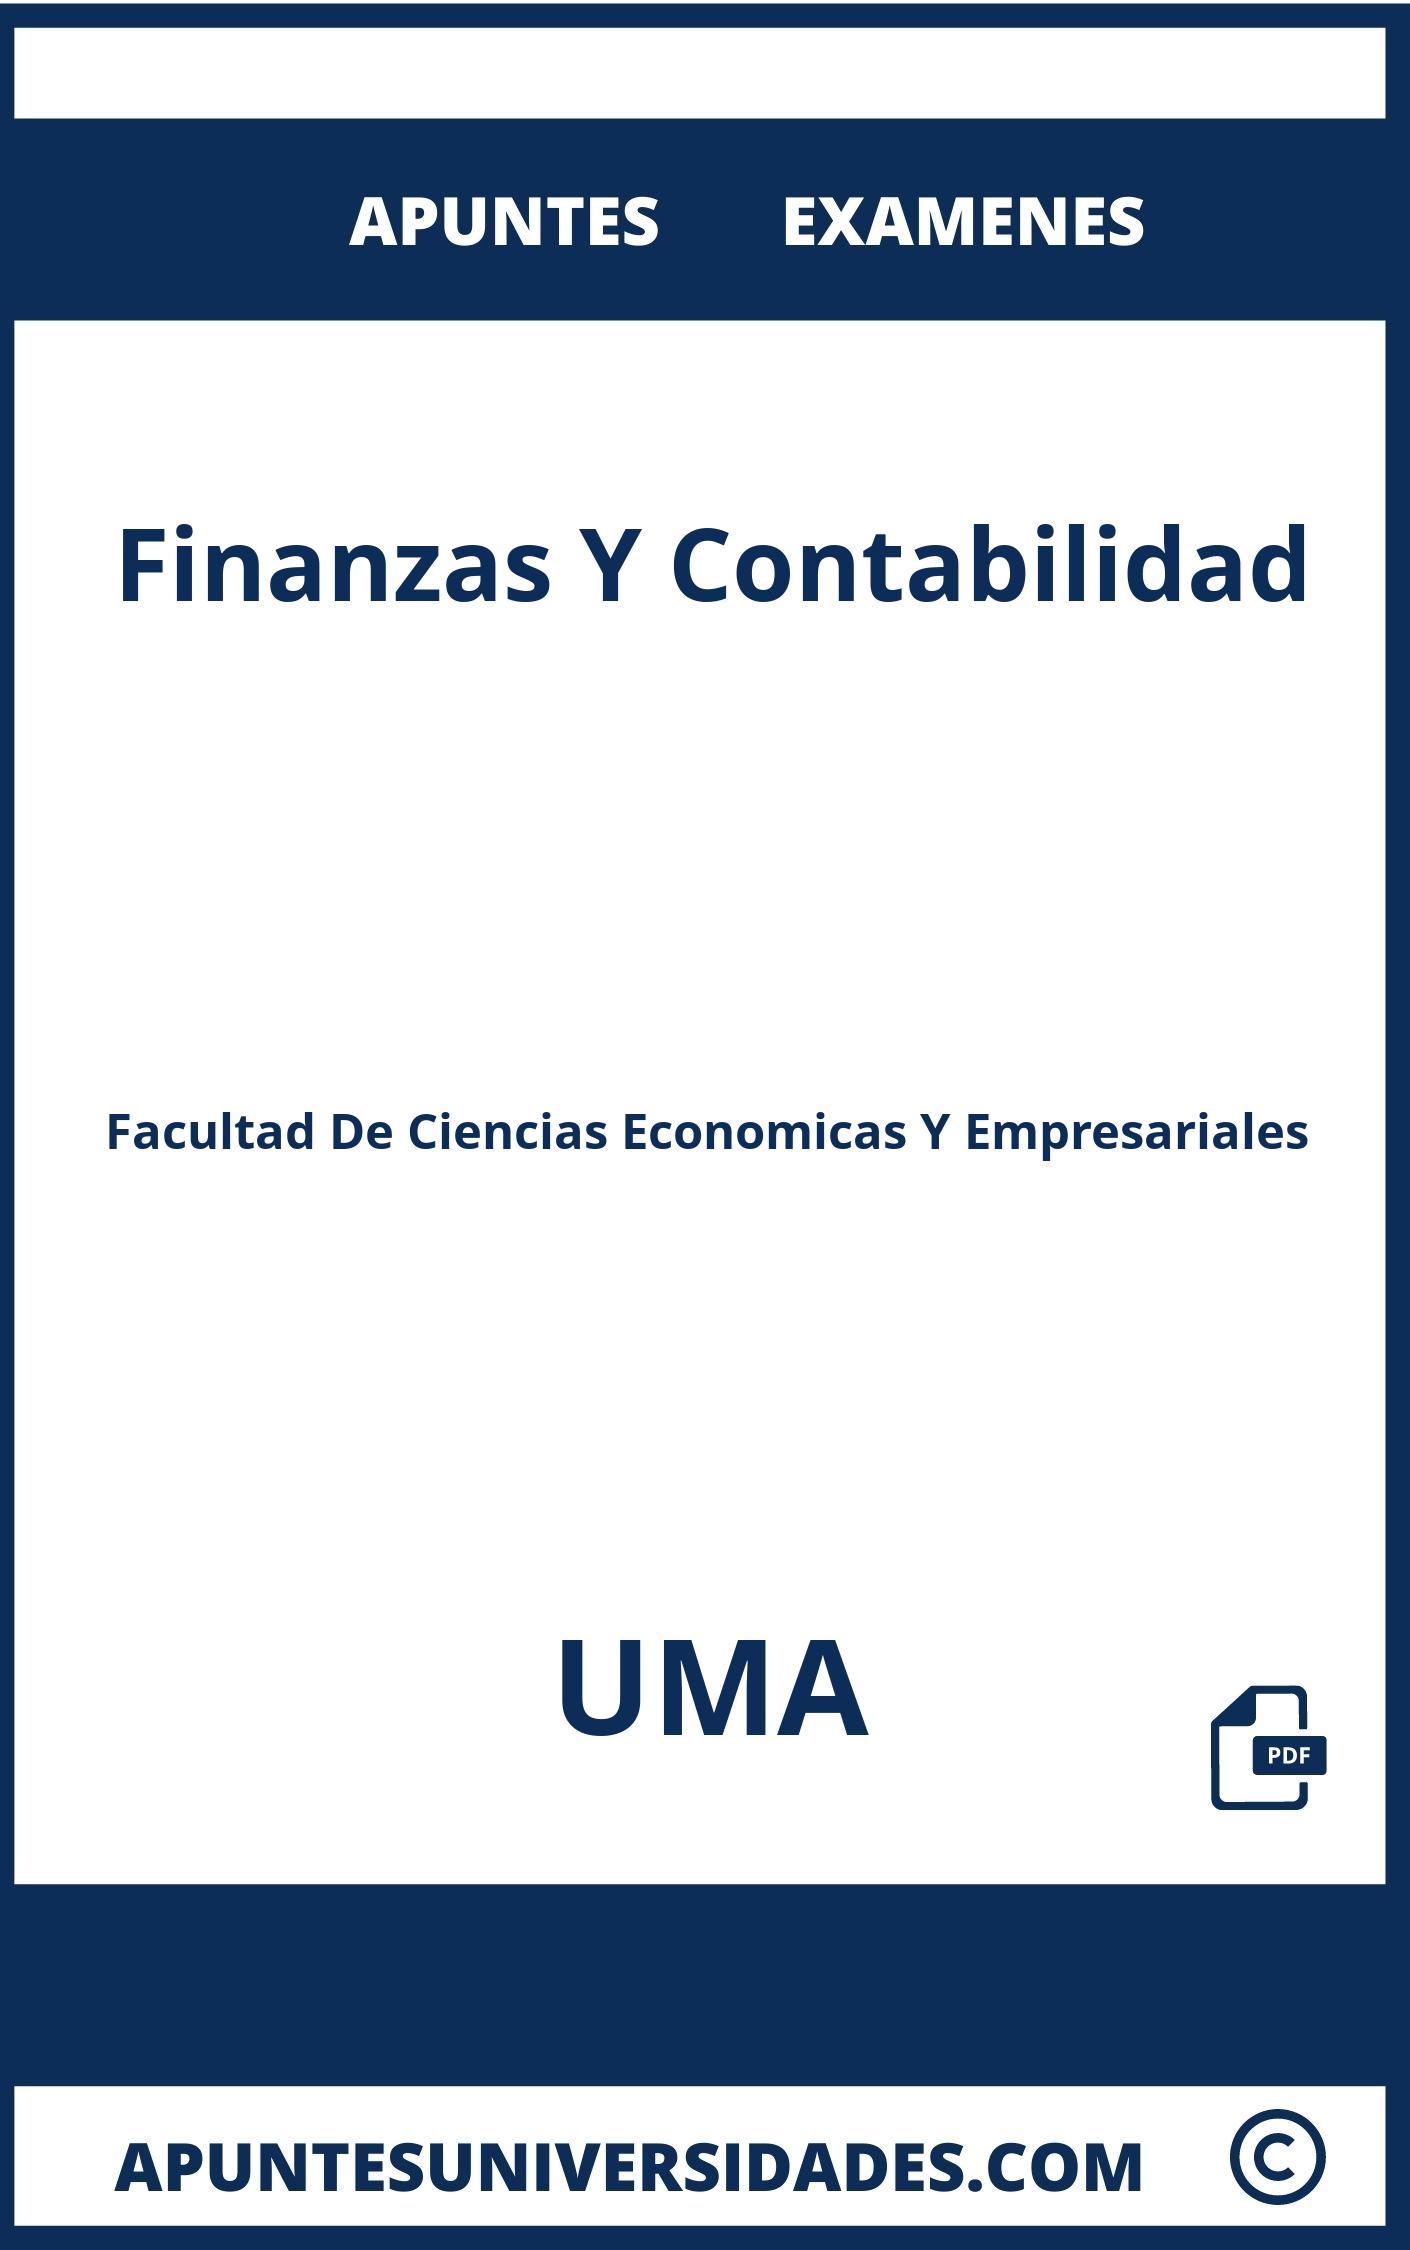 Examenes y Apuntes Finanzas Y Contabilidad UMA